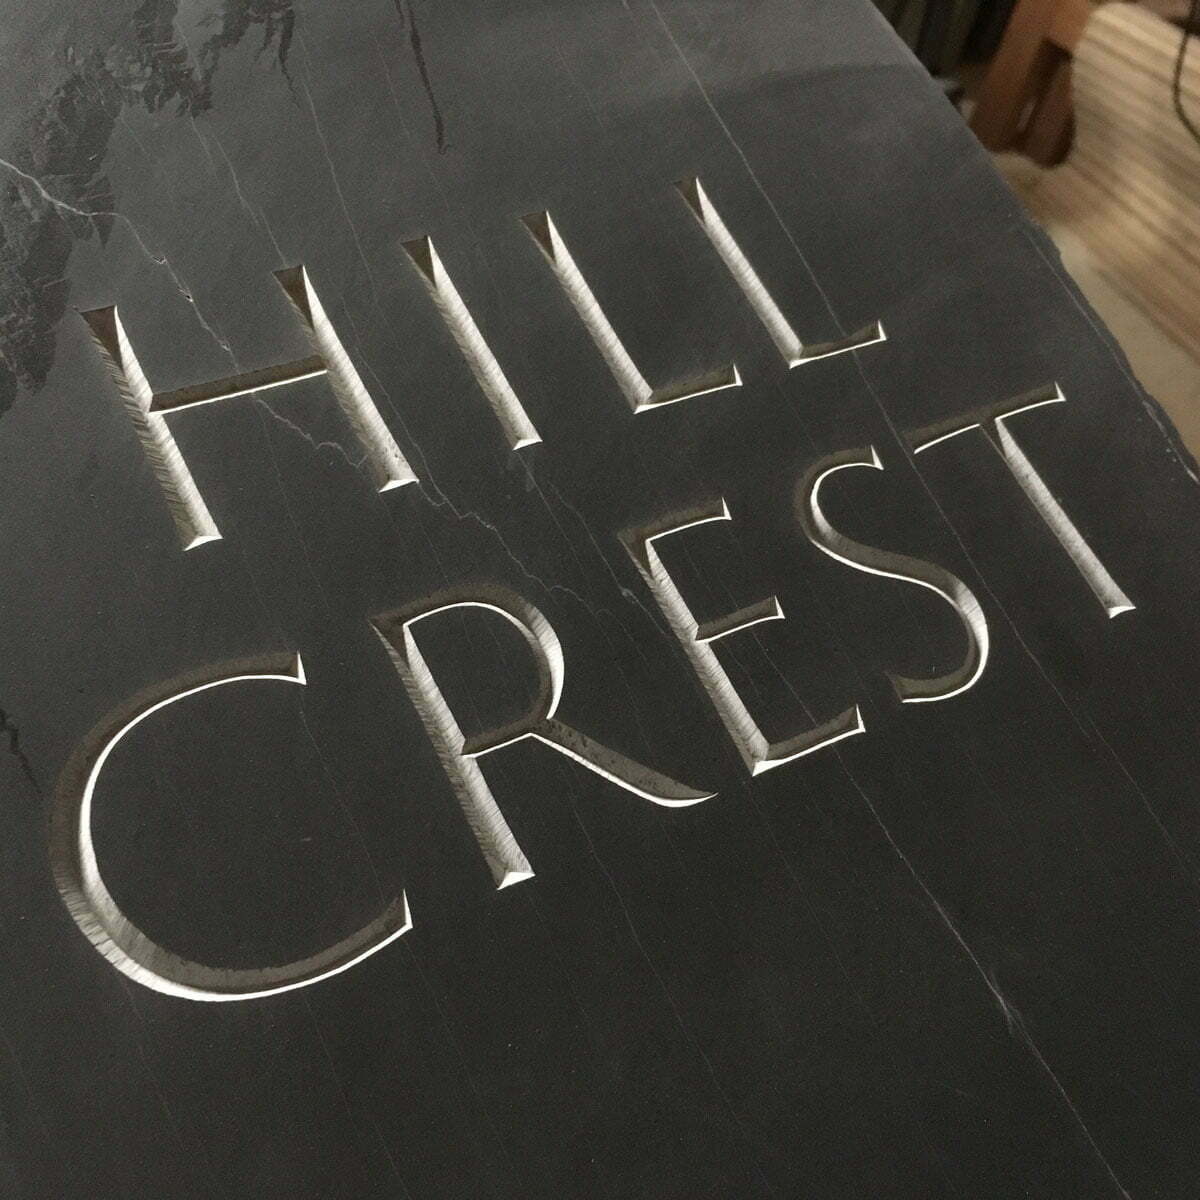 Hill Crest sq 1